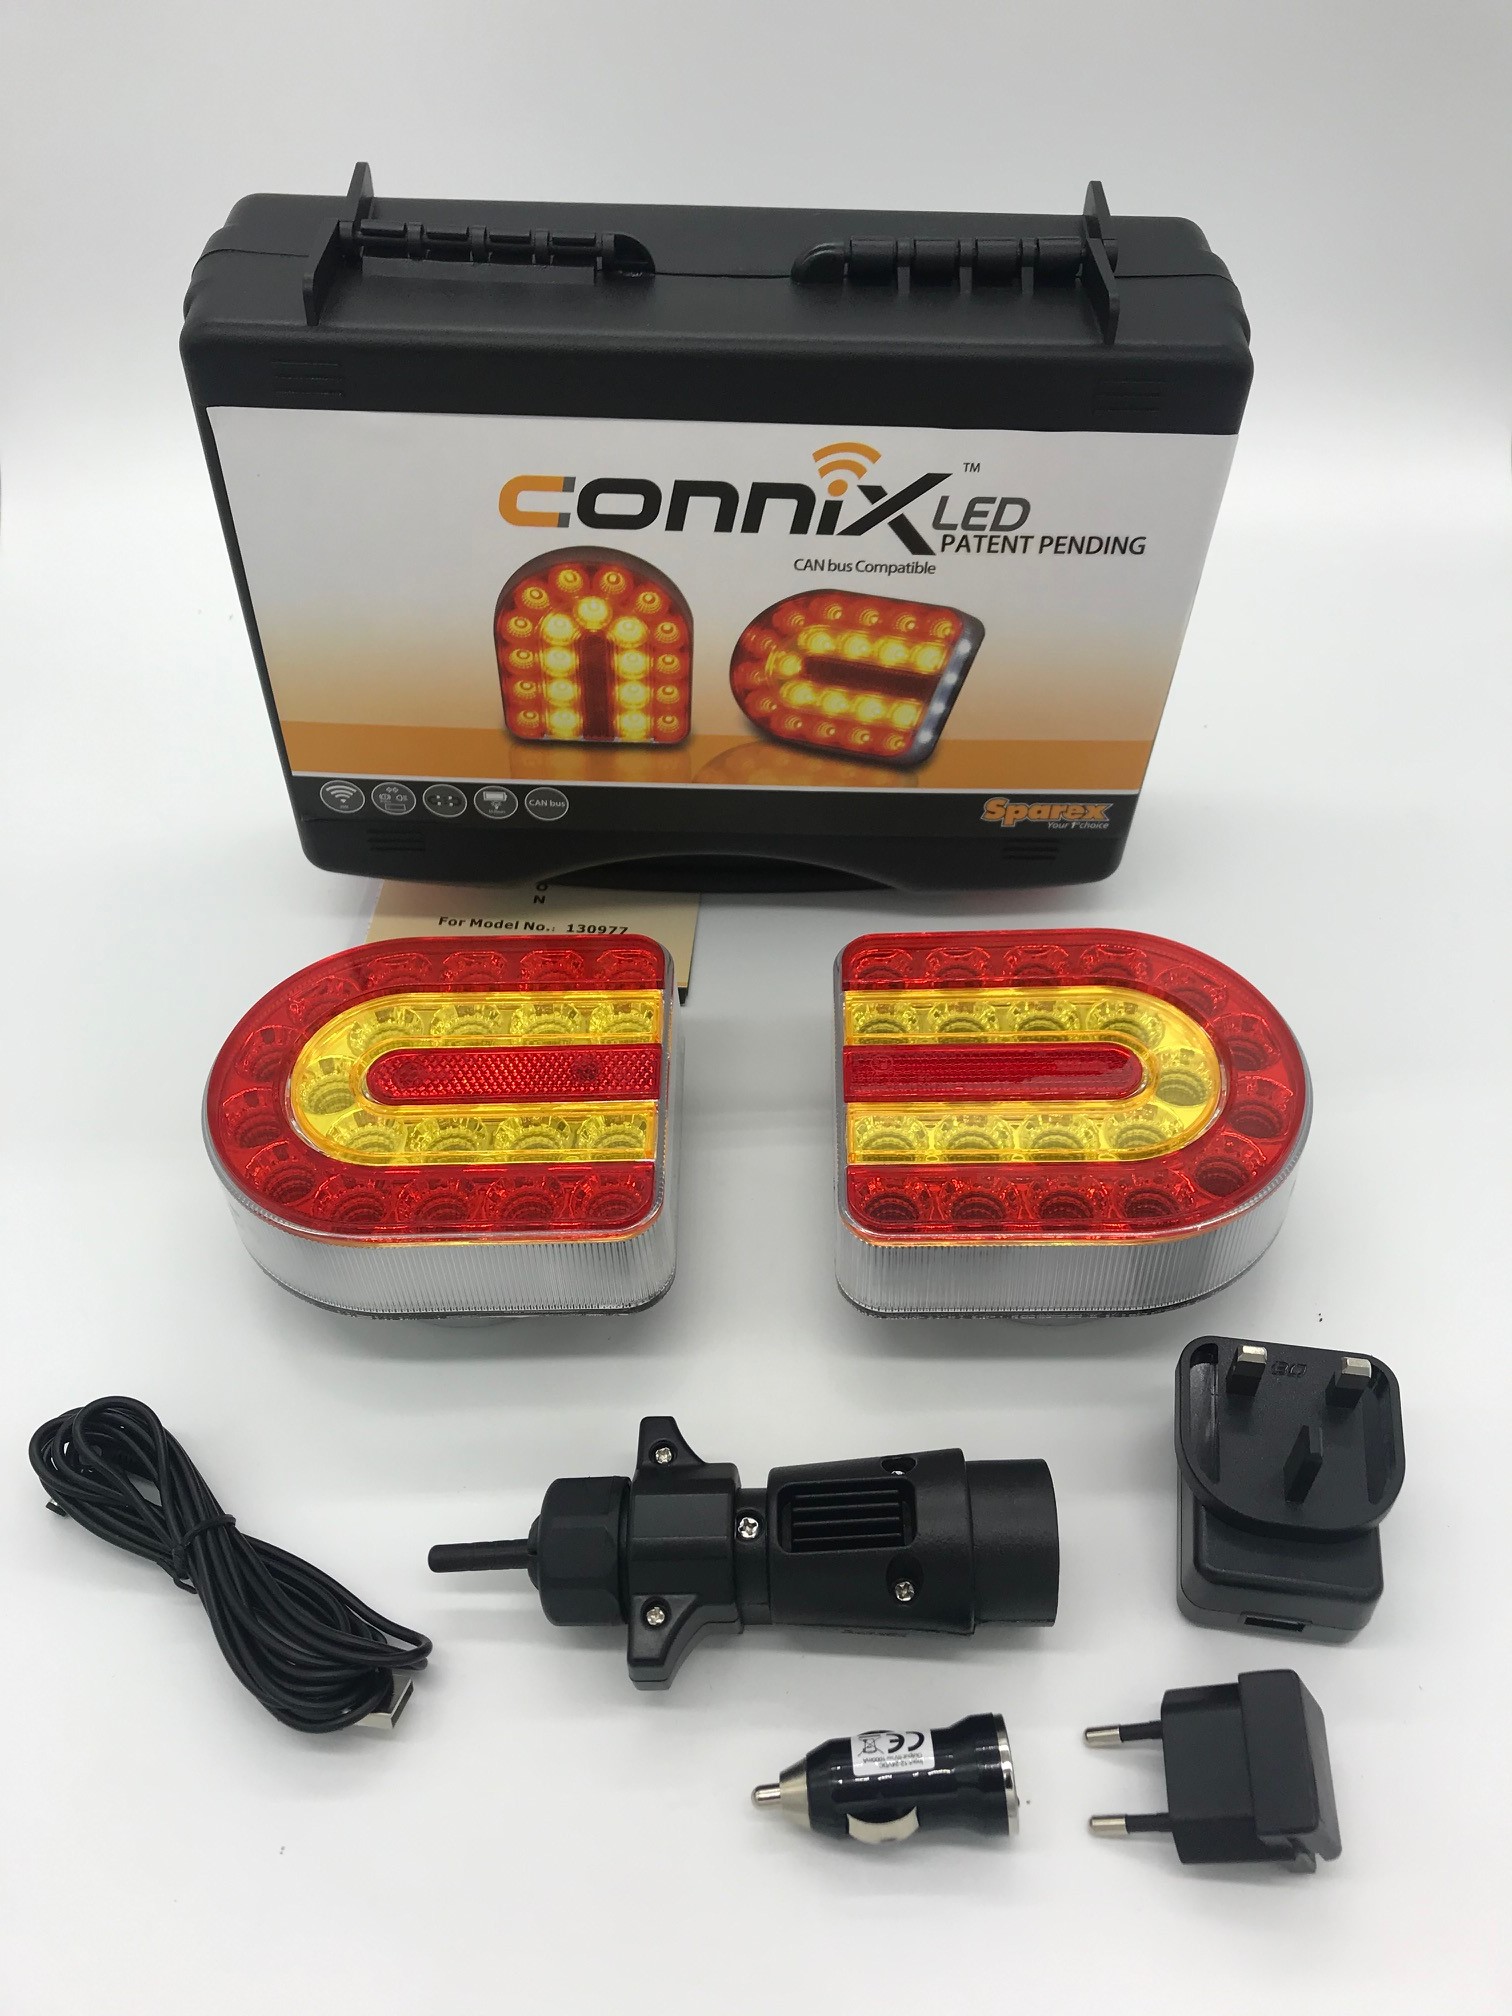 Connix CAN BUS fähig Leuchtensatz kabellos Funk Magnet Anhänger